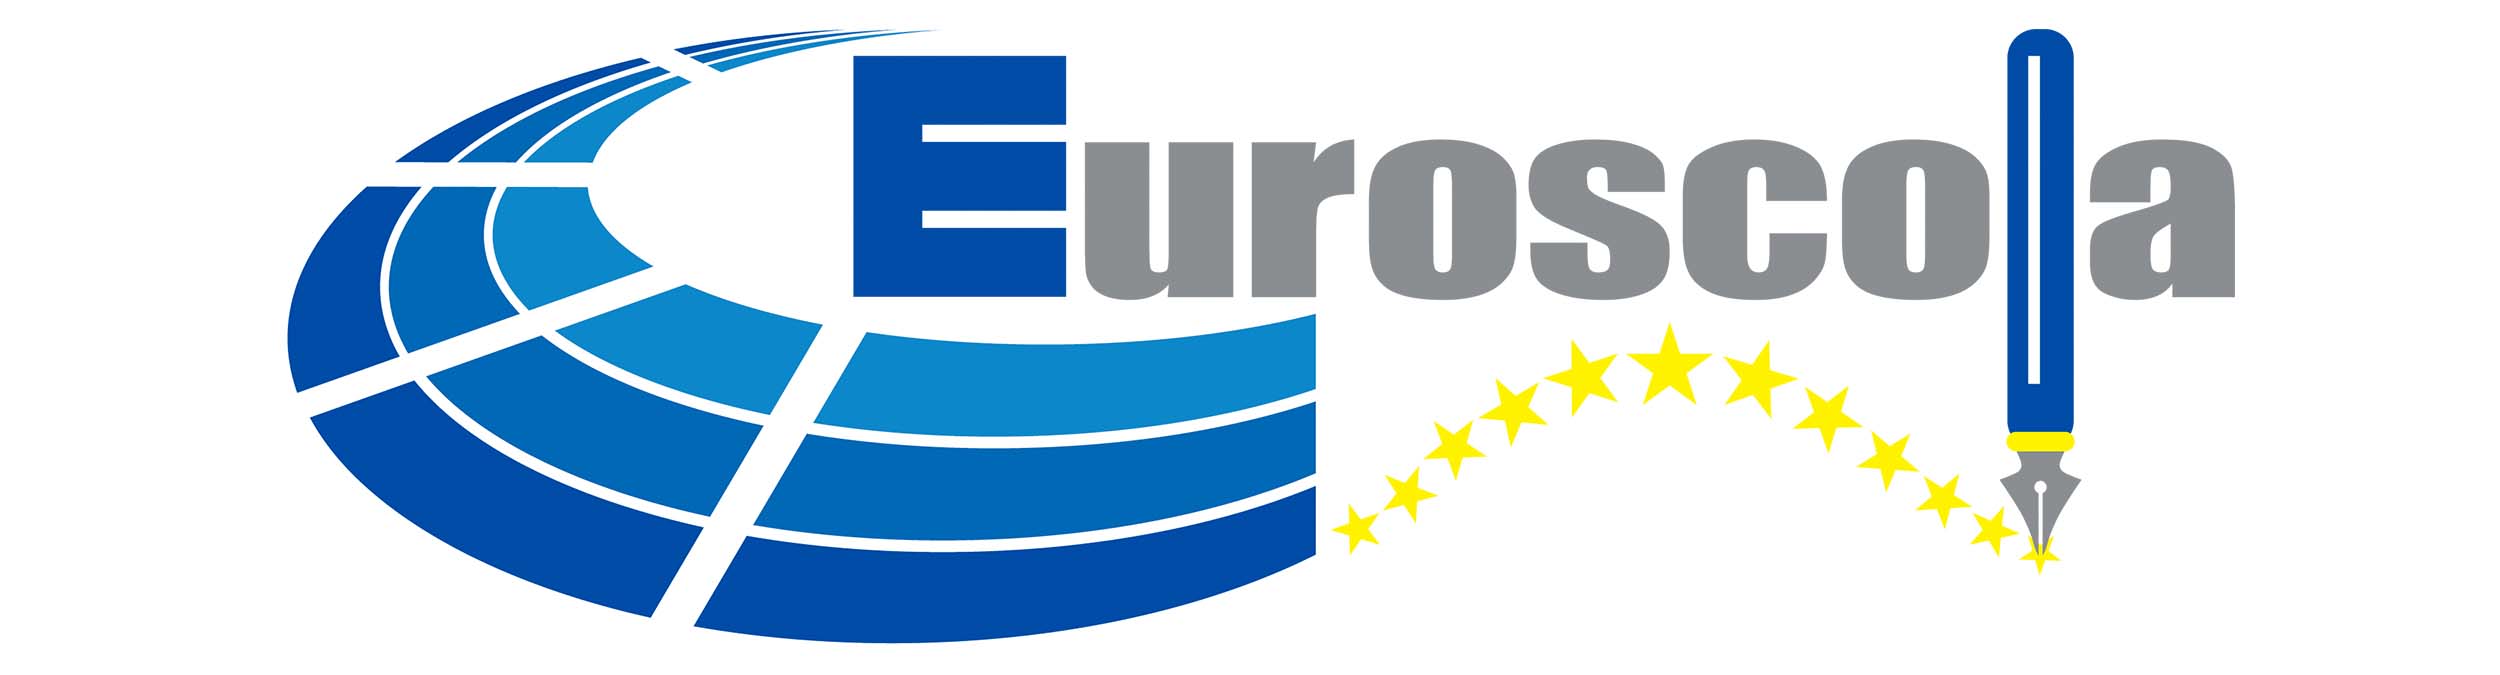 Euroescola